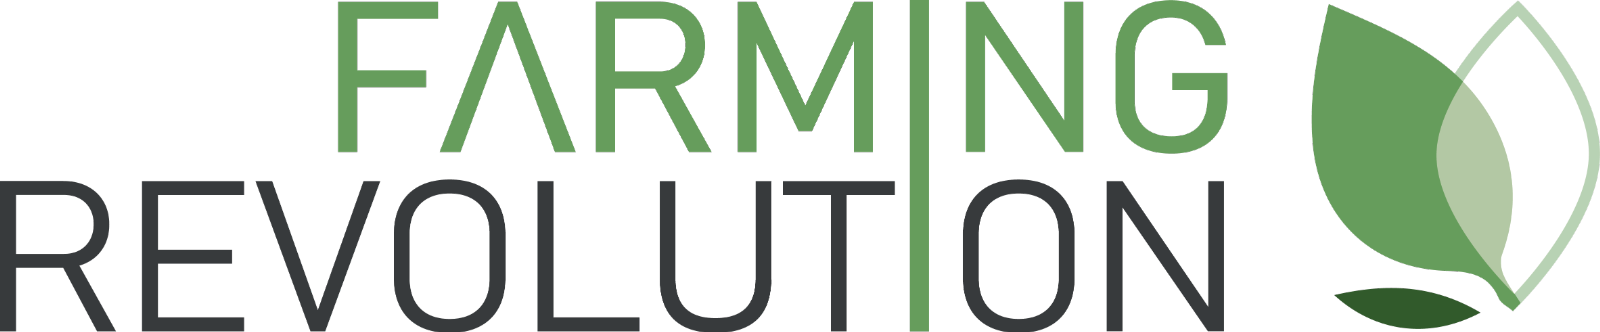 Farming Revolution logo